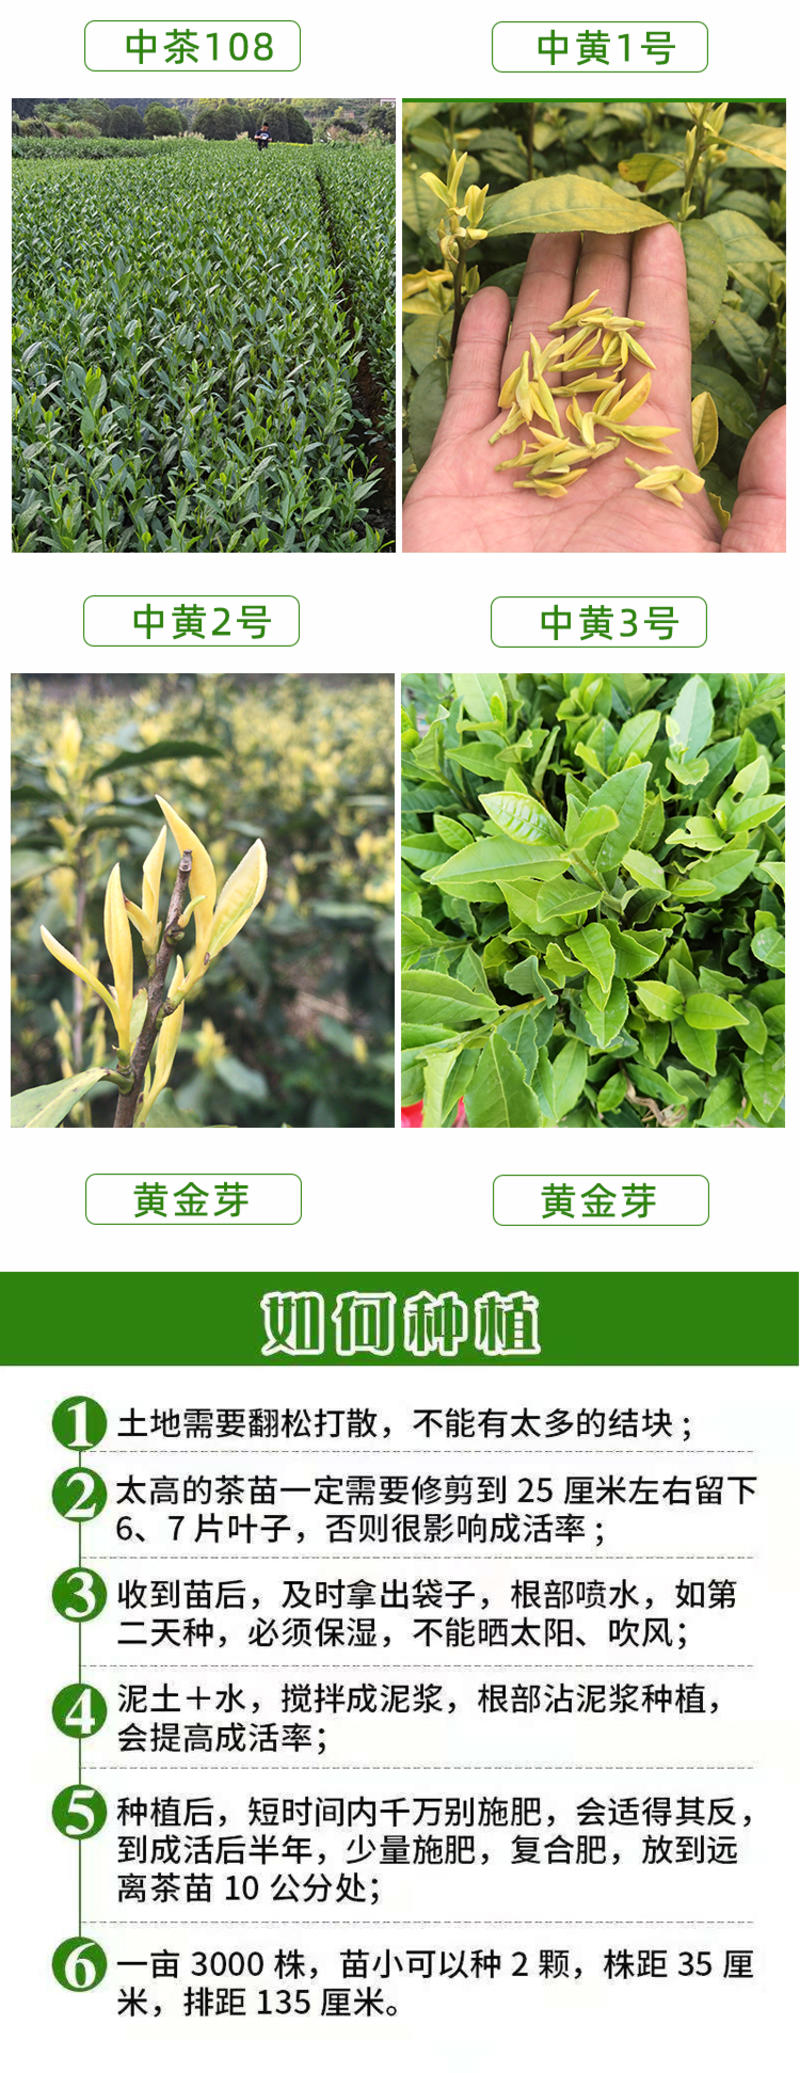 中茶108茶树苗龙井系列茶苗品种齐全绿茶扁碧螺春茶树苗